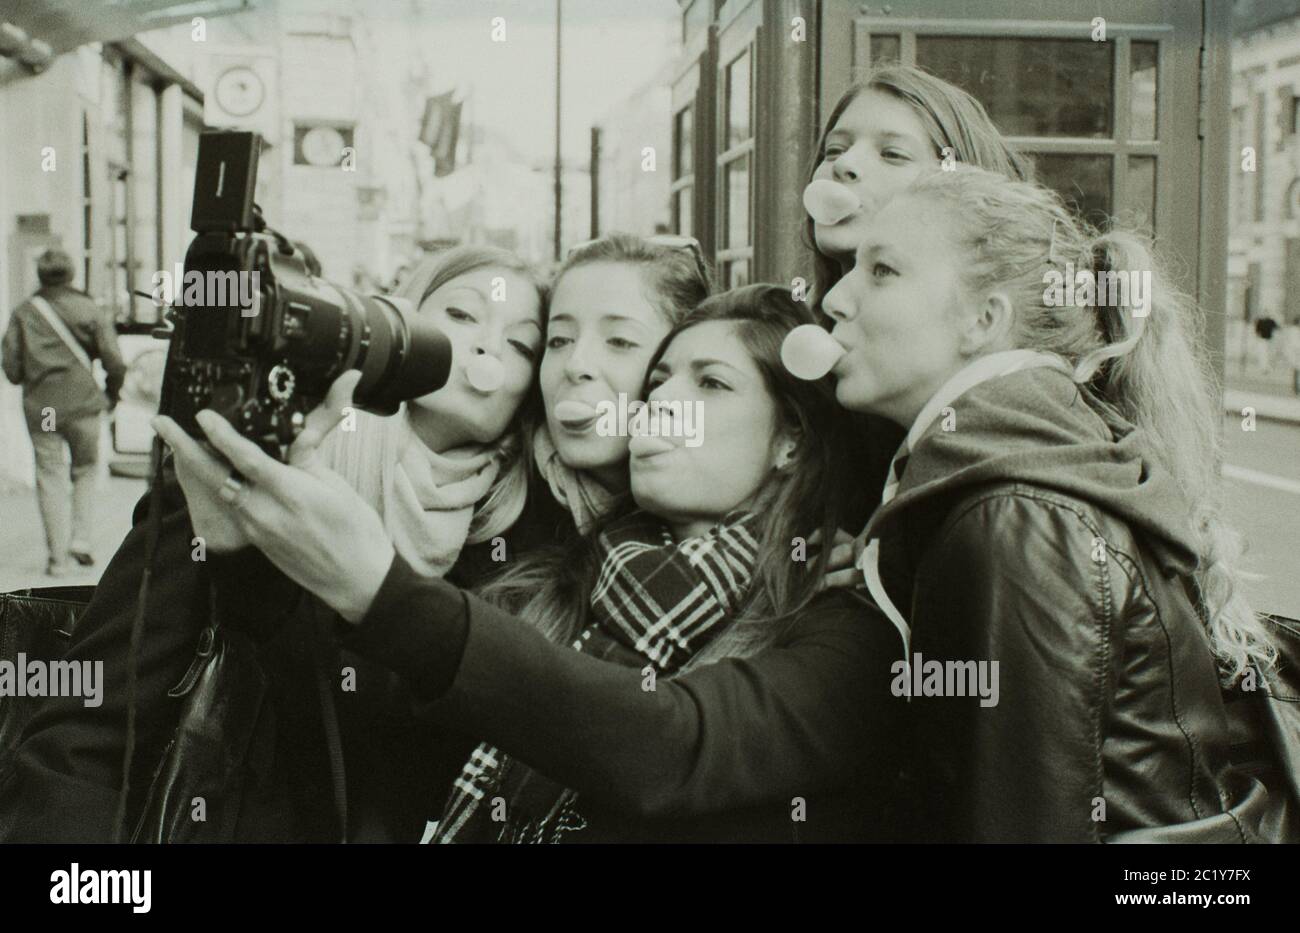 Ragazze masticare gum bubblegher in posa per un selfie utilizzando una fotocamera DSLR, Londra, 2014 Foto Stock